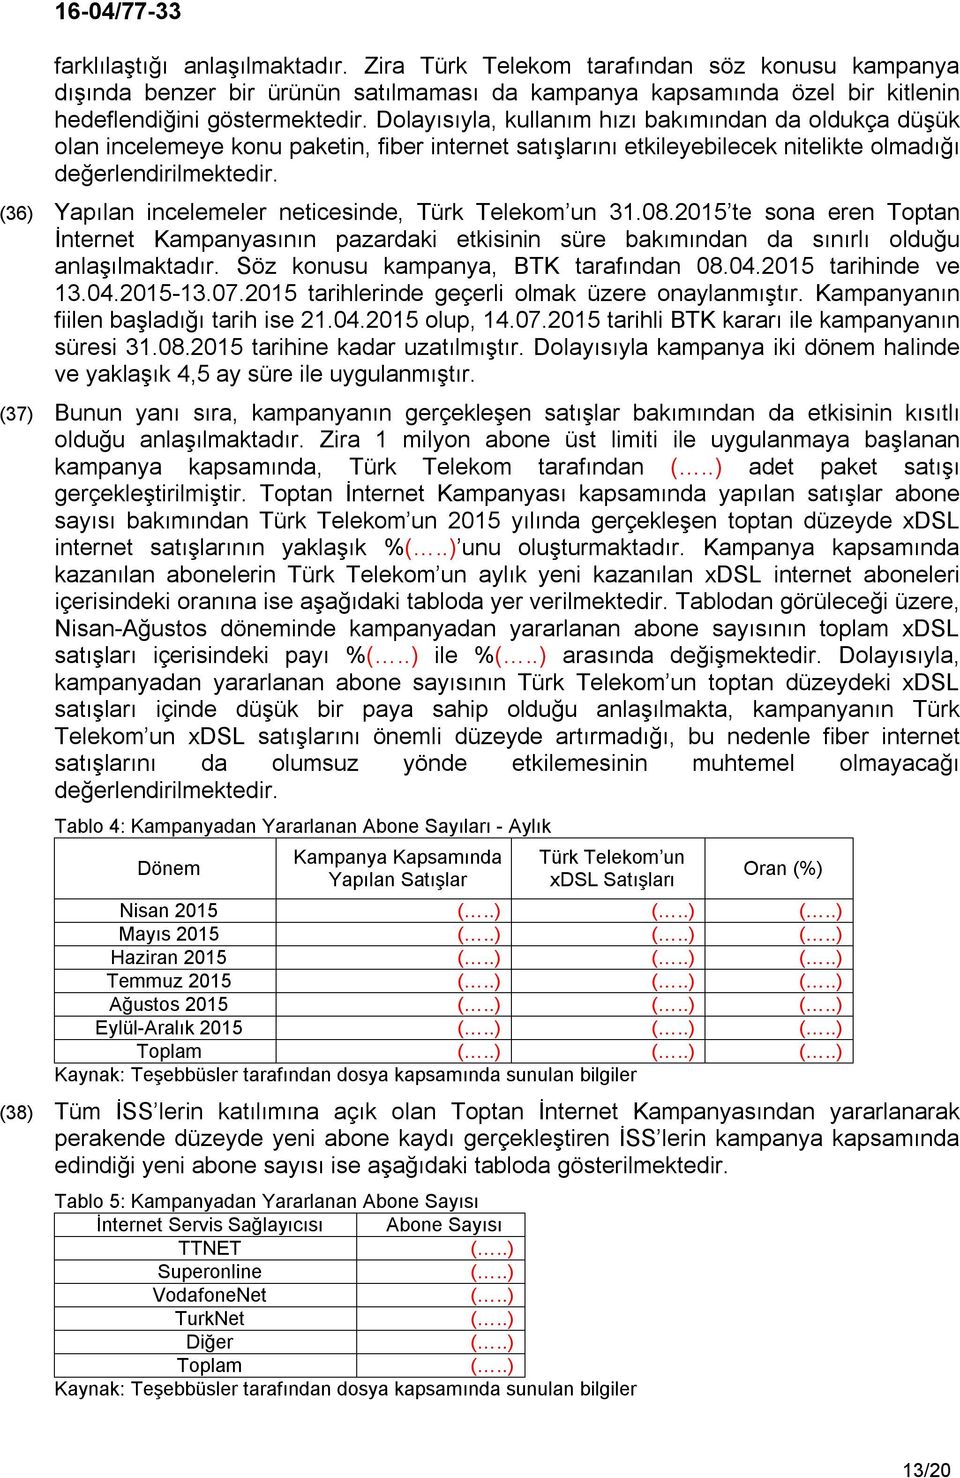 (36) Yapılan incelemeler neticesinde, Türk Telekom un 31.08.2015 te sona eren Toptan İnternet Kampanyasının pazardaki etkisinin süre bakımından da sınırlı olduğu anlaşılmaktadır.